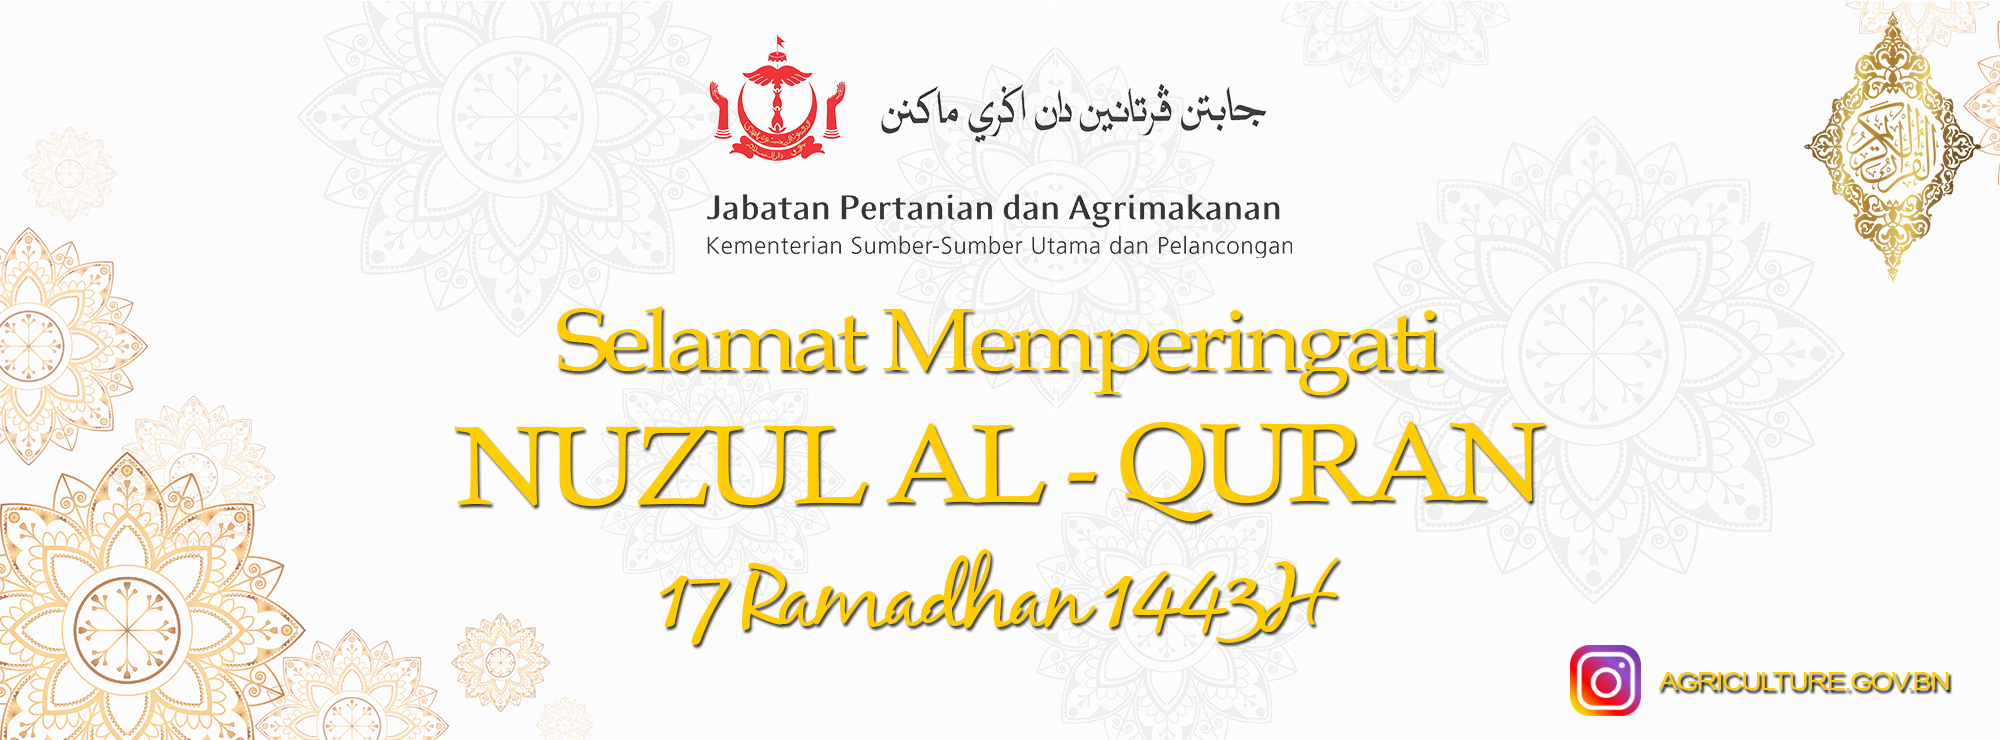 Banner Nuzul Al-Quran.png